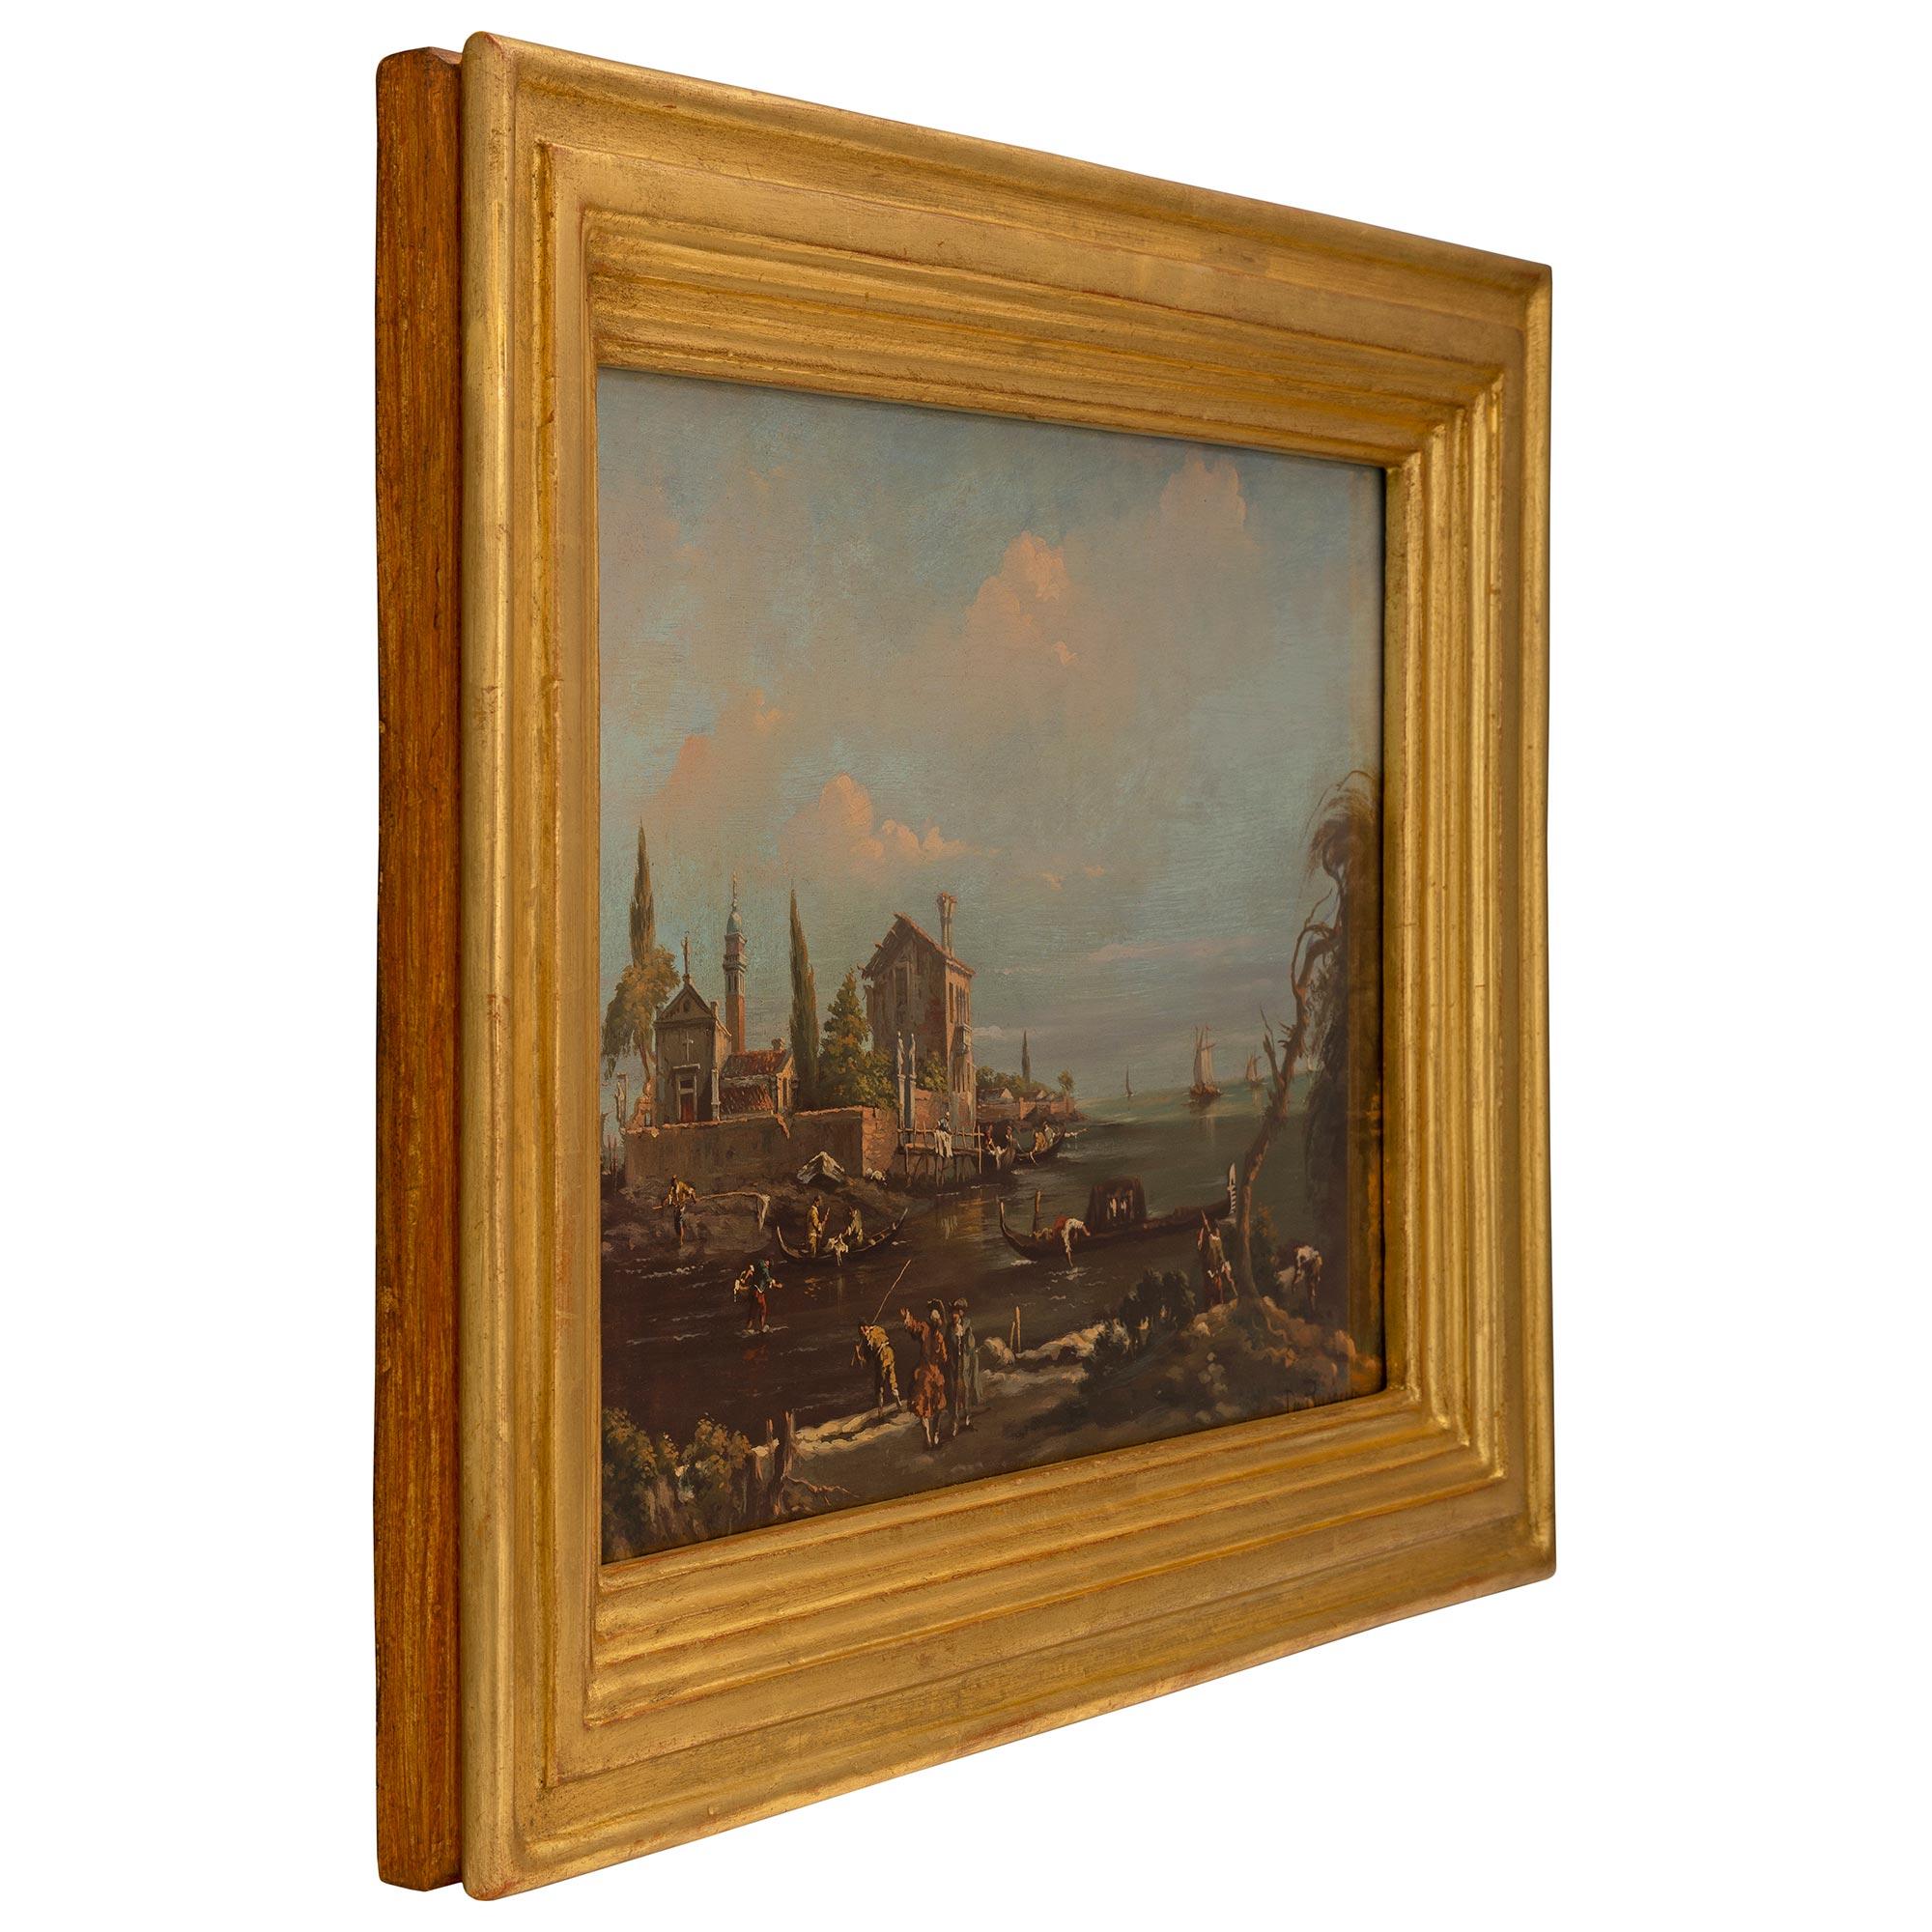 Ein schönes italienisches Gemälde in Öl auf Leinwand aus dem 19. Das Gemälde zeigt eine schöne italienische Szene mit Persönlichkeiten, die ihrem Tag nachgehen, mit charmanten Booten und einem Haus am Wasser. Das Gemälde befindet sich in einem